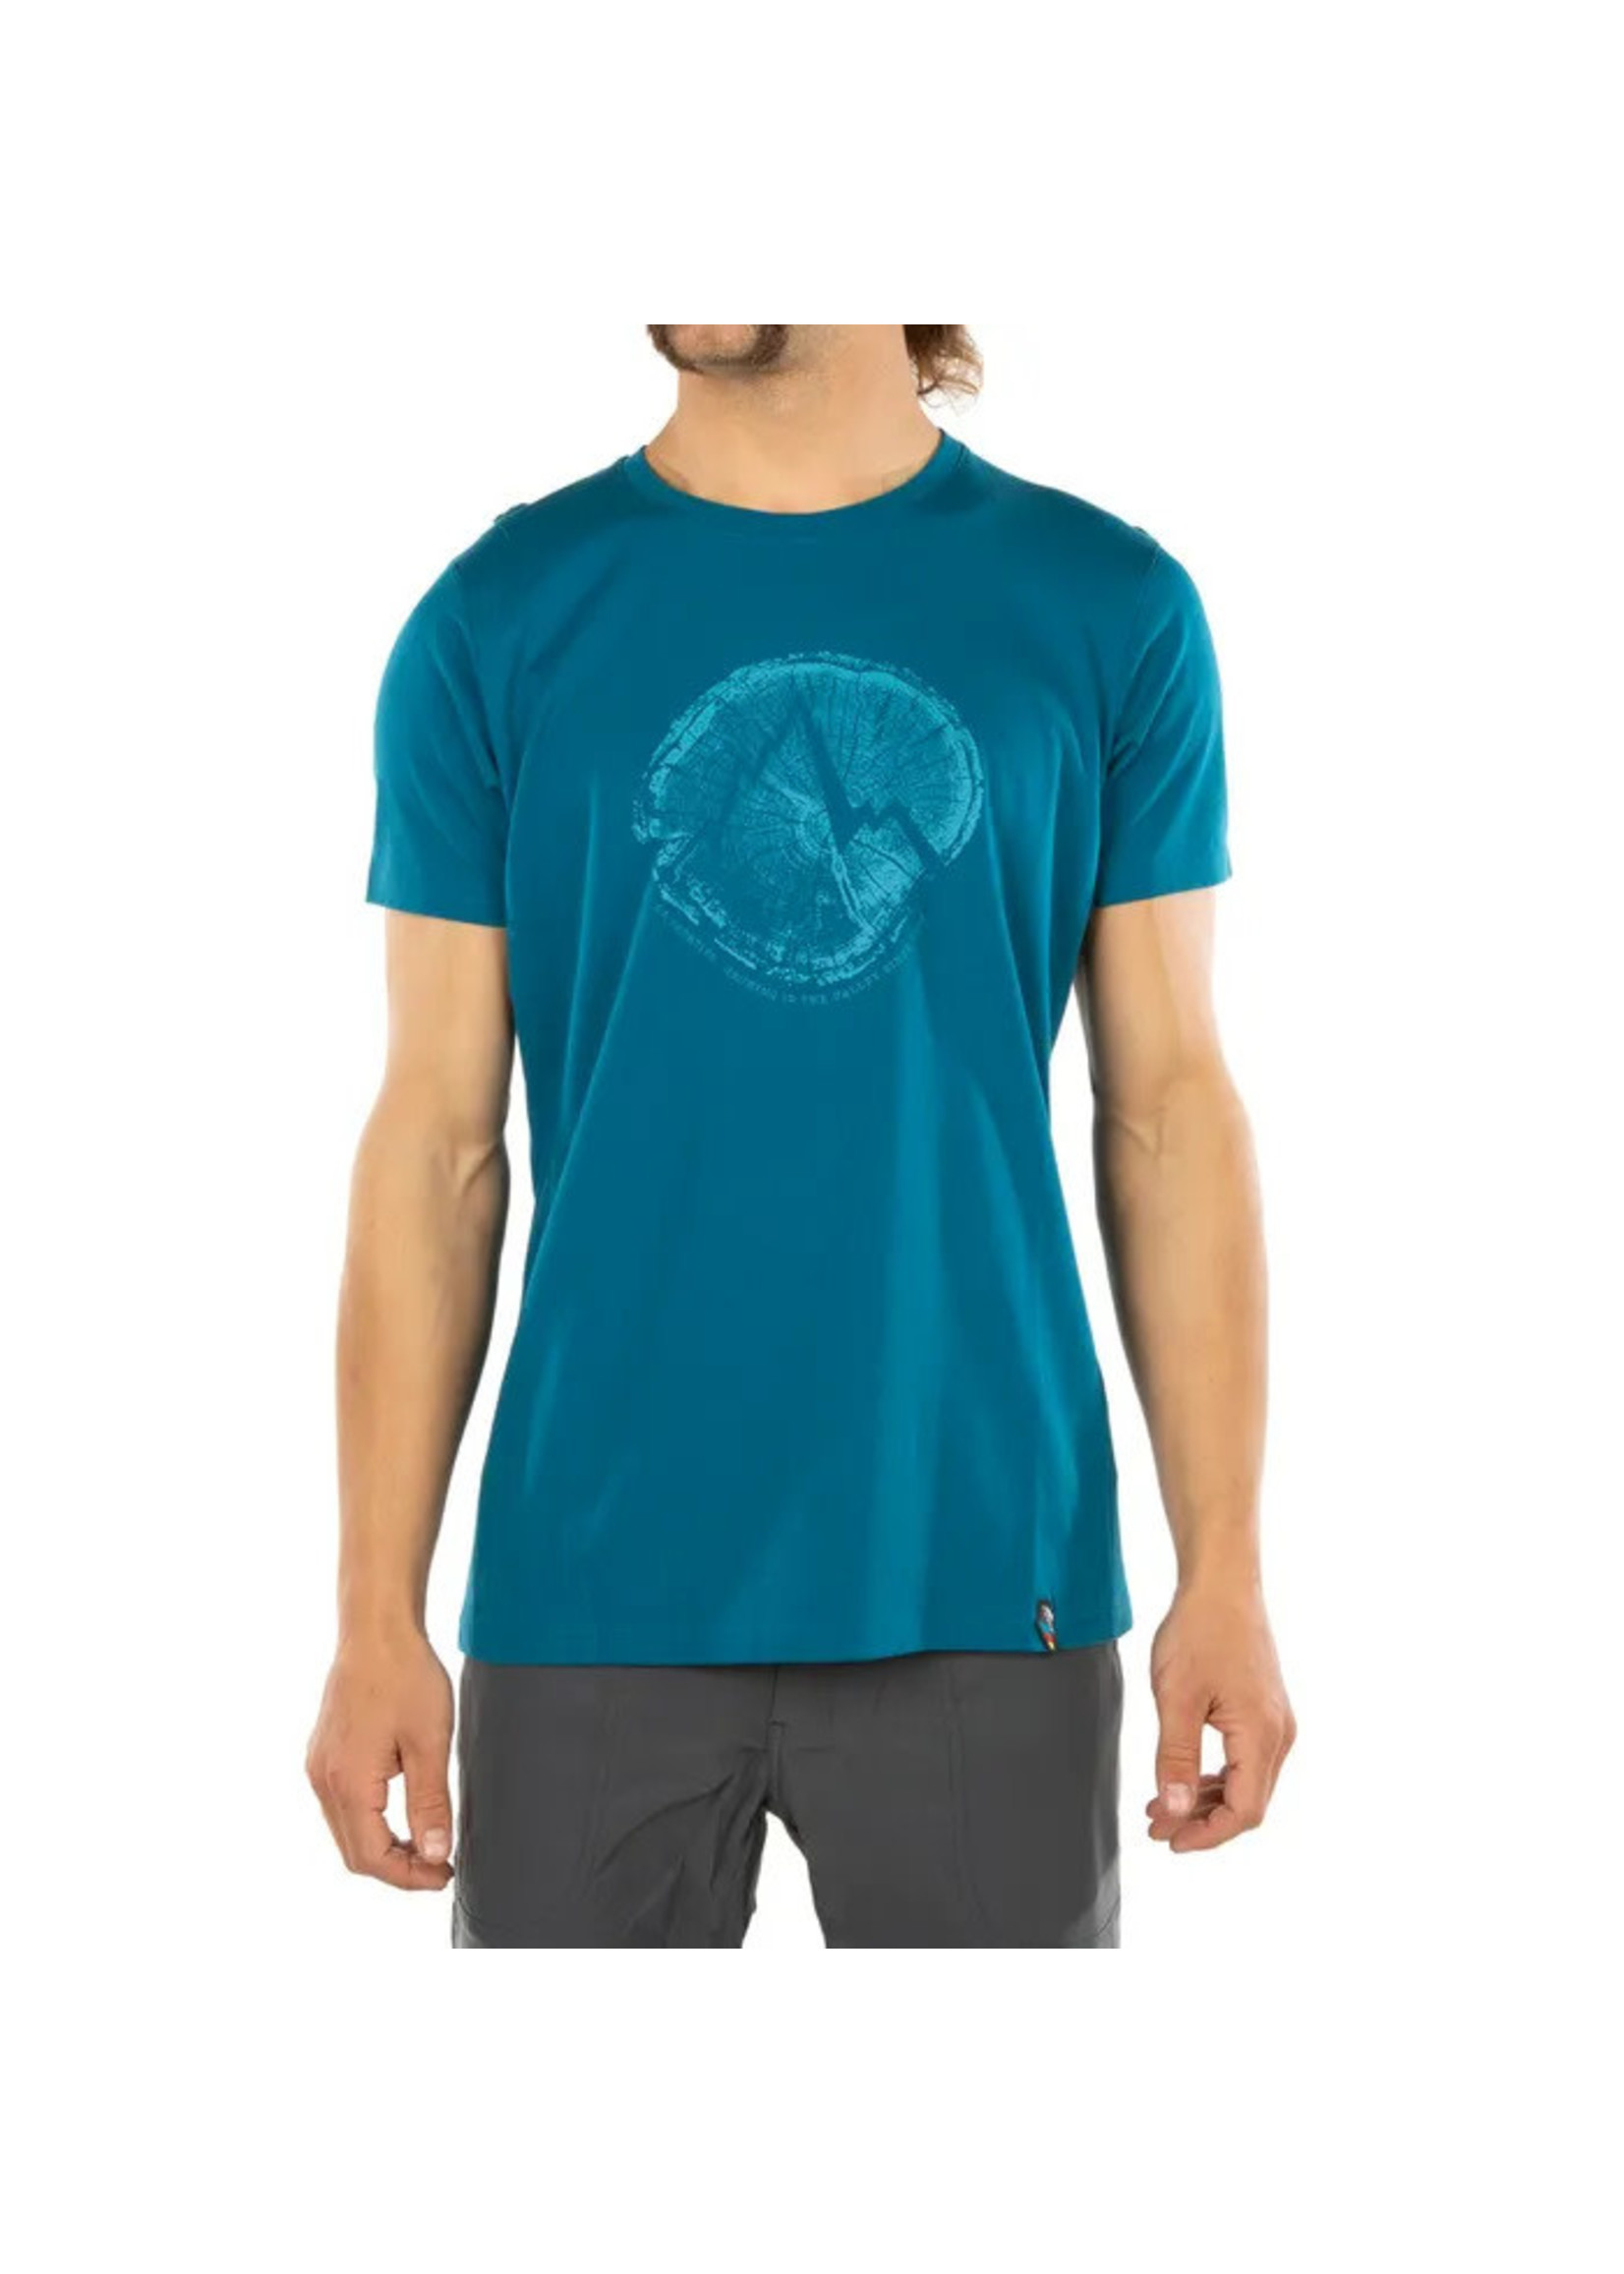 La Sportiva T-shirt Cross Section pour hommes